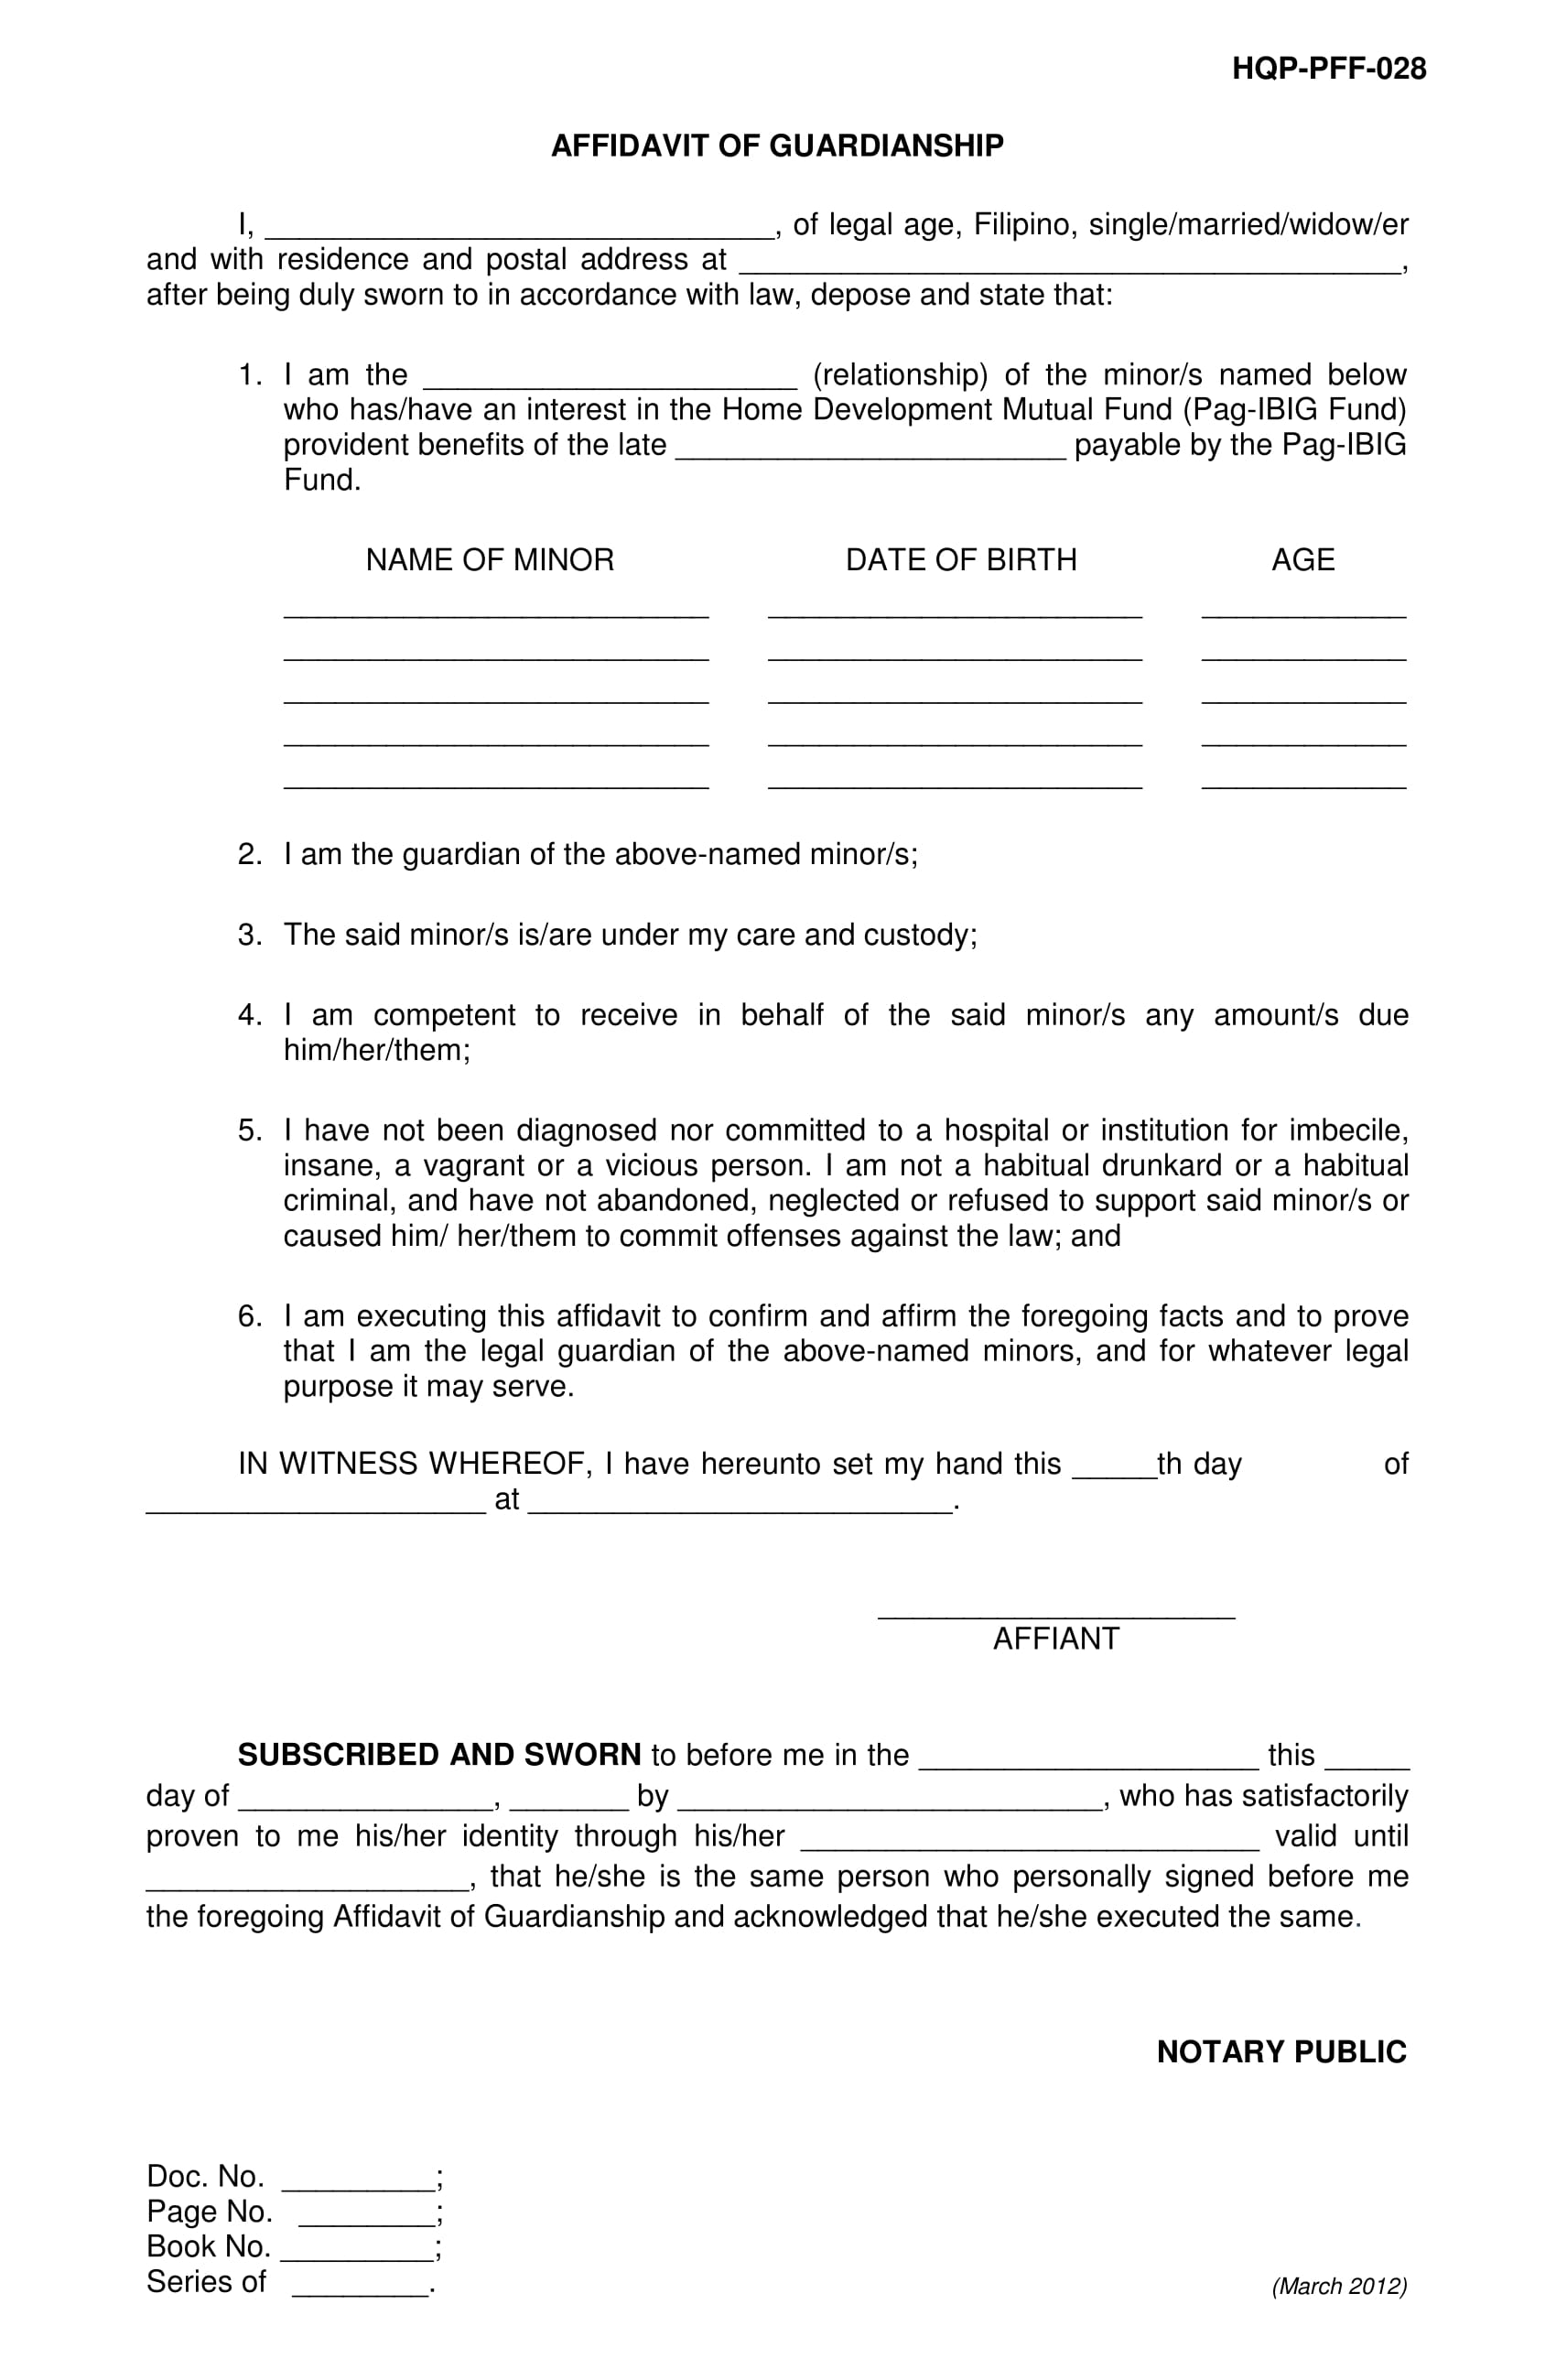 Affidavit Of Guardianship Form For Sss Sss Death Claim Checklist Vrogue